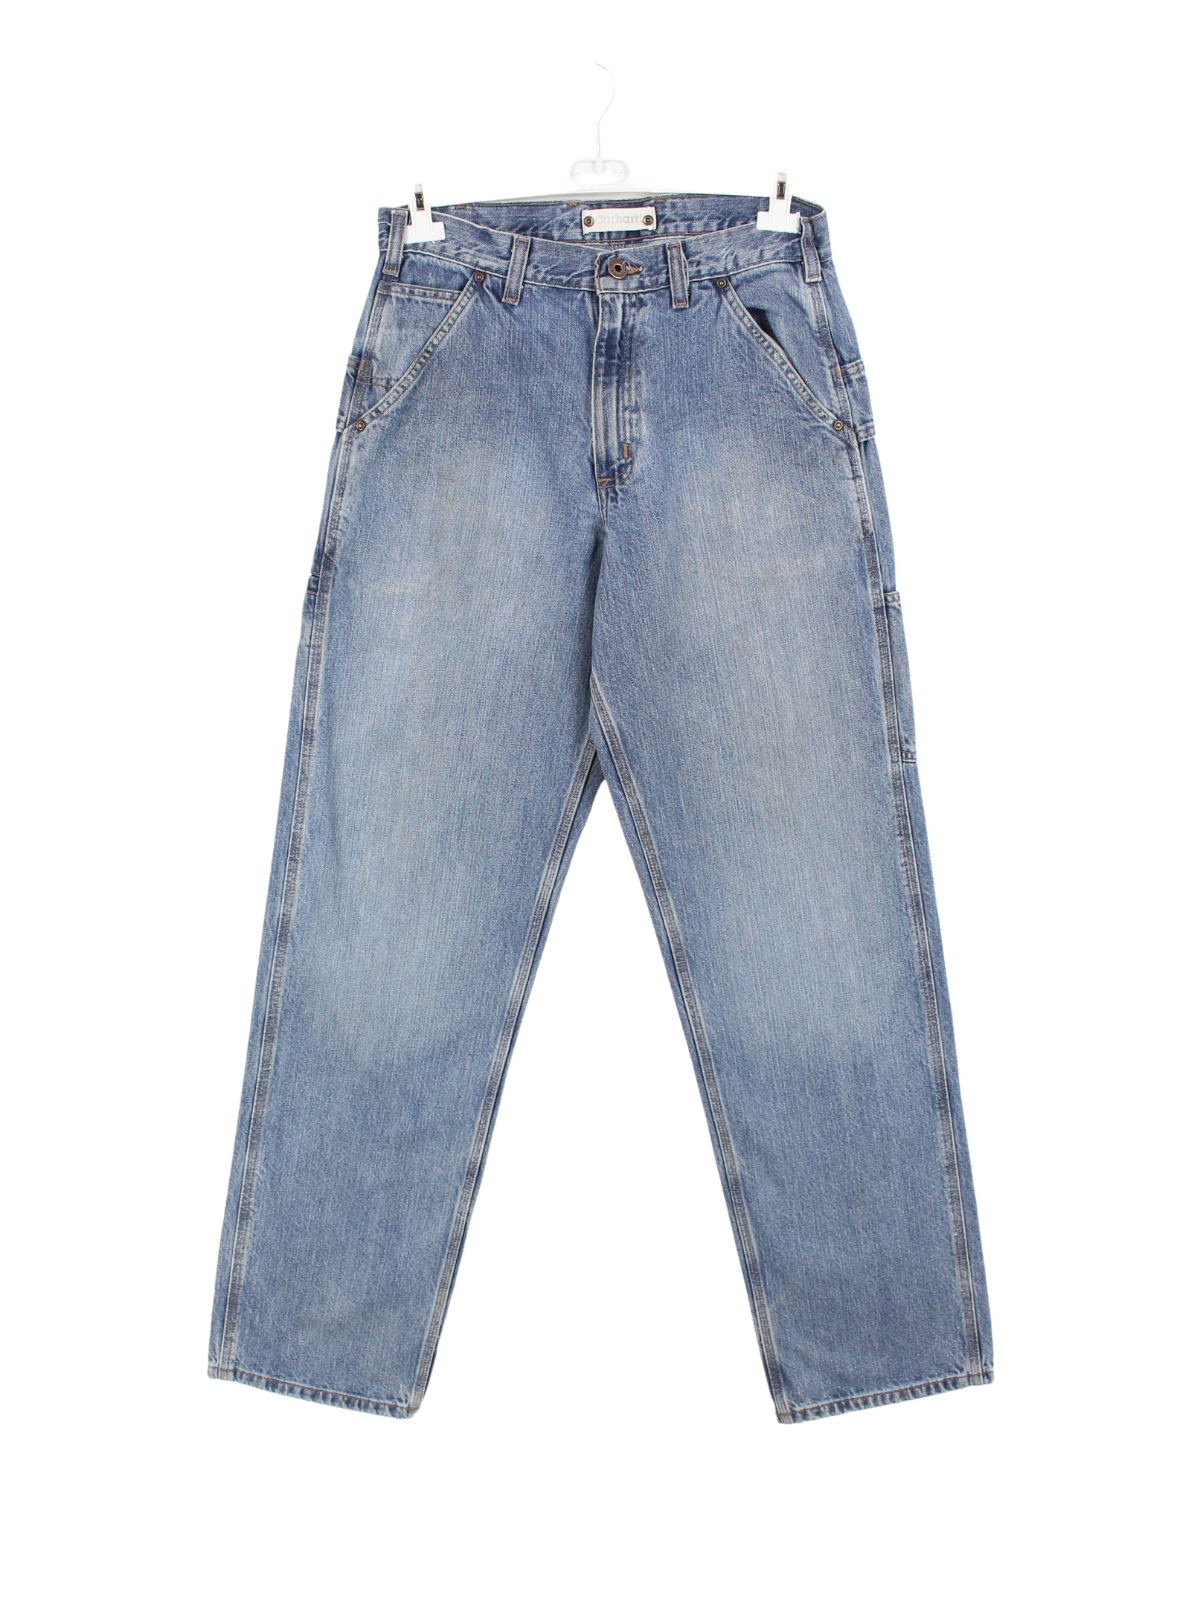 Carhartt Carpenter Jeans Blau W32 L36